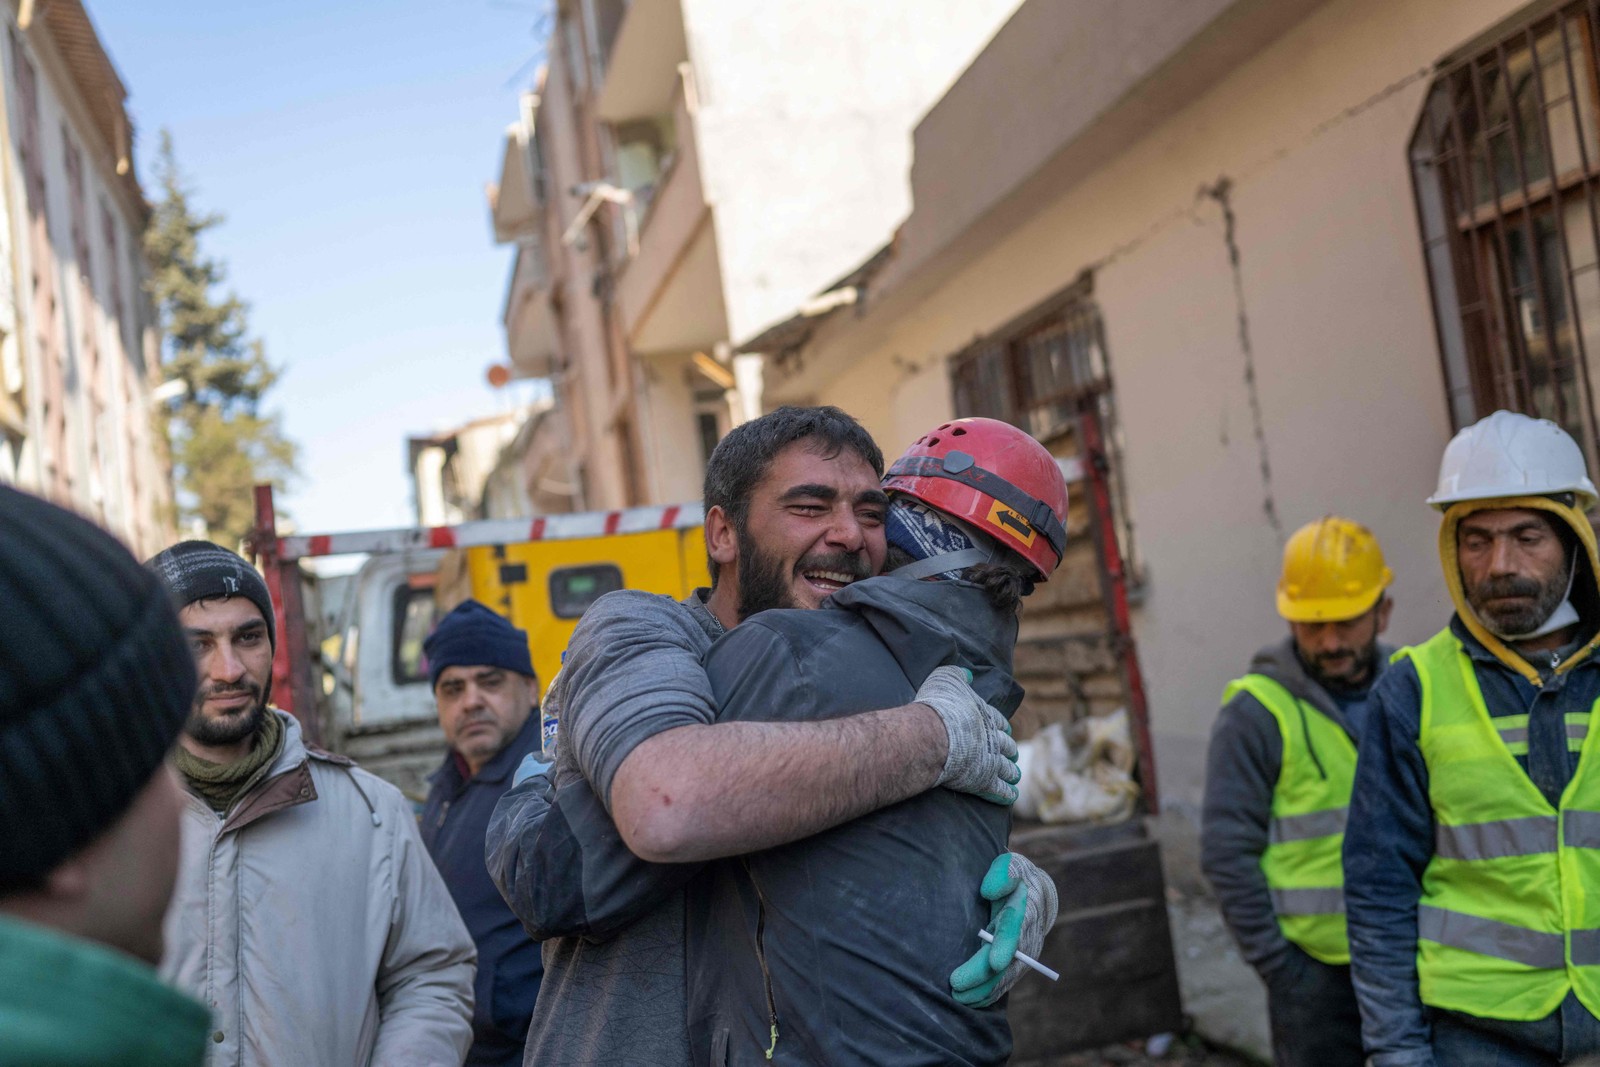 Jovem de 16 anos salvo dos escombros três dias após terremoto abraça mineiro que o resgatou  — Foto: BULENT KILIC/AFP